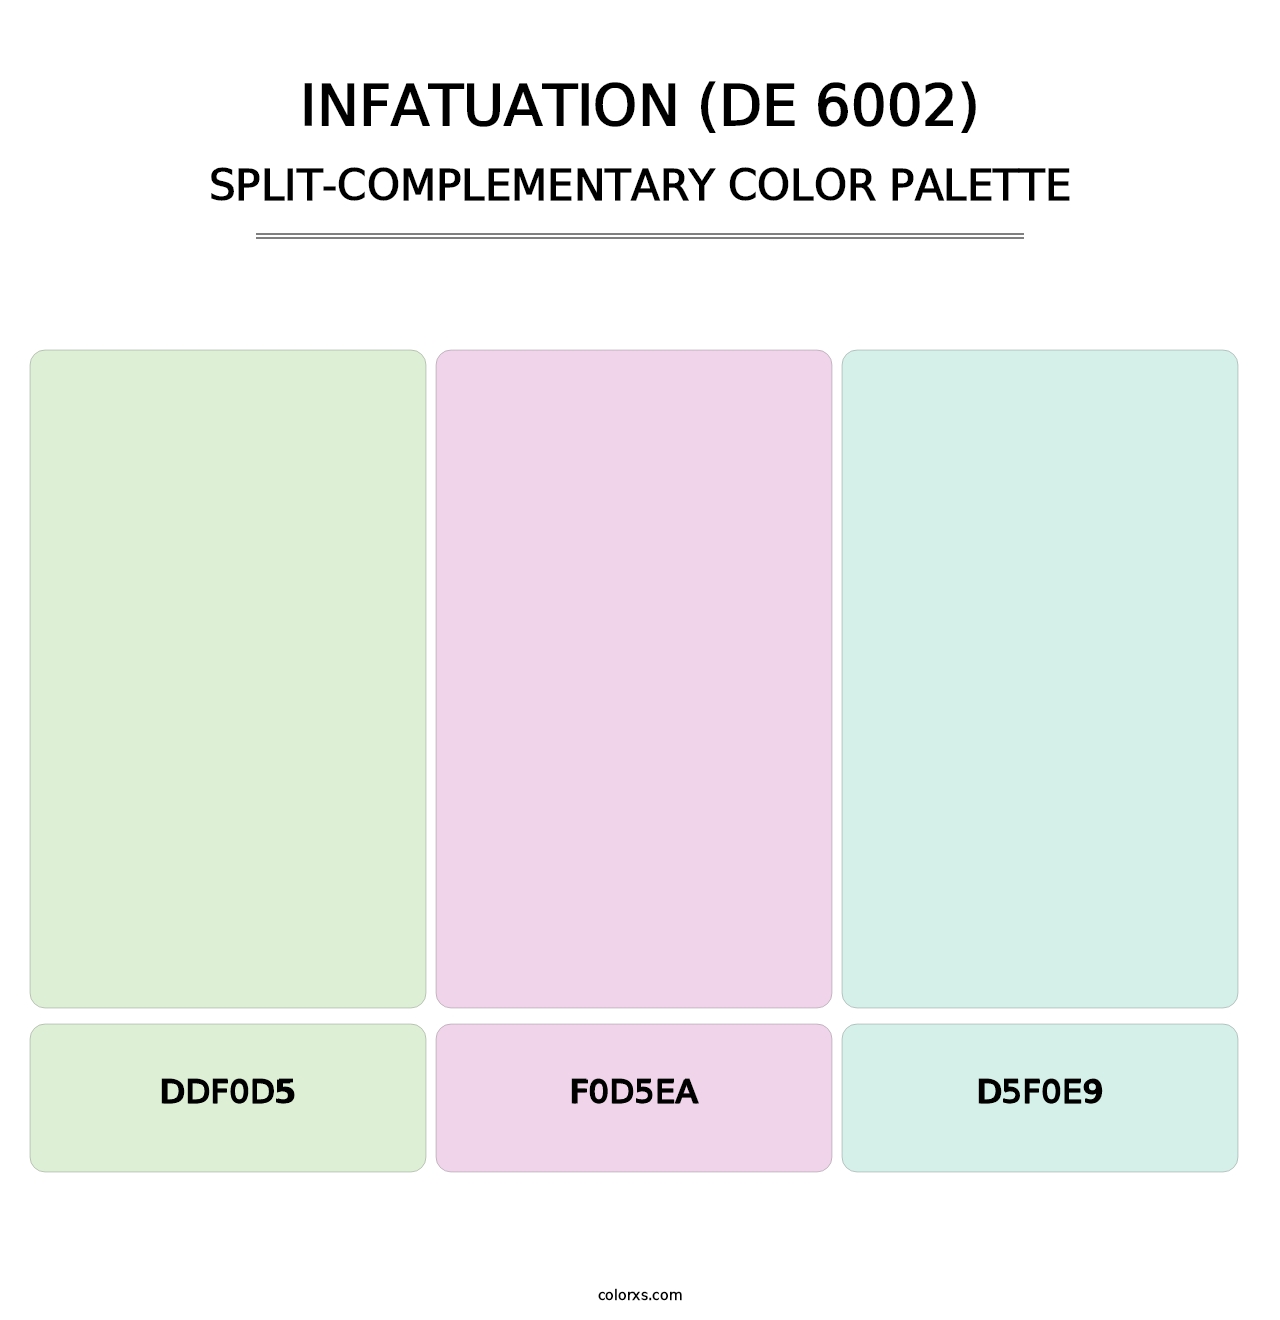 Infatuation (DE 6002) - Split-Complementary Color Palette